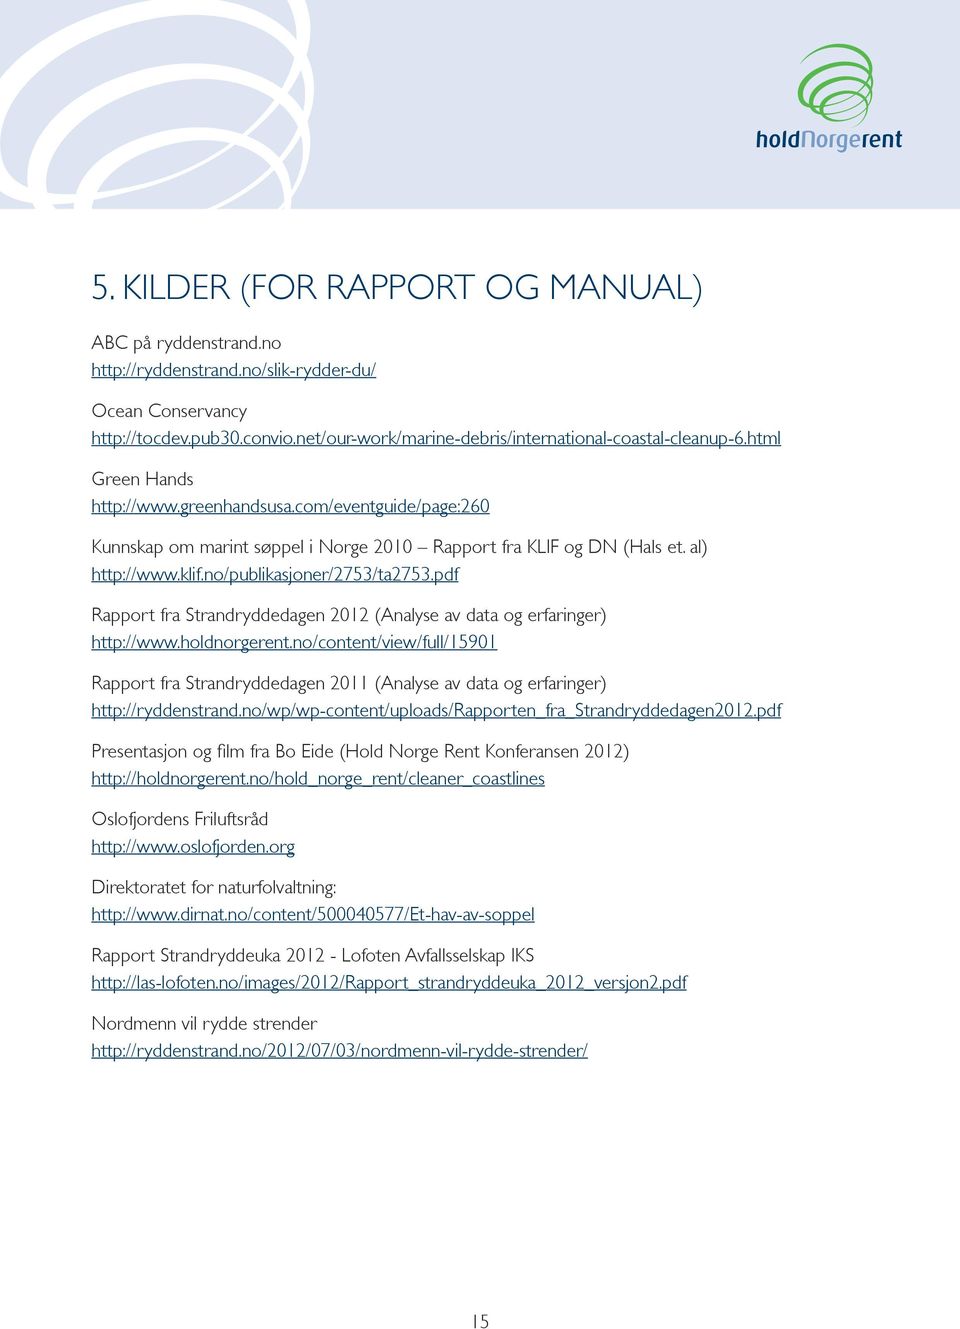 pdf Rapport fra Strandryddedagen 2012 (Analyse av data og erfaringer) http://www.holdnorgerent.